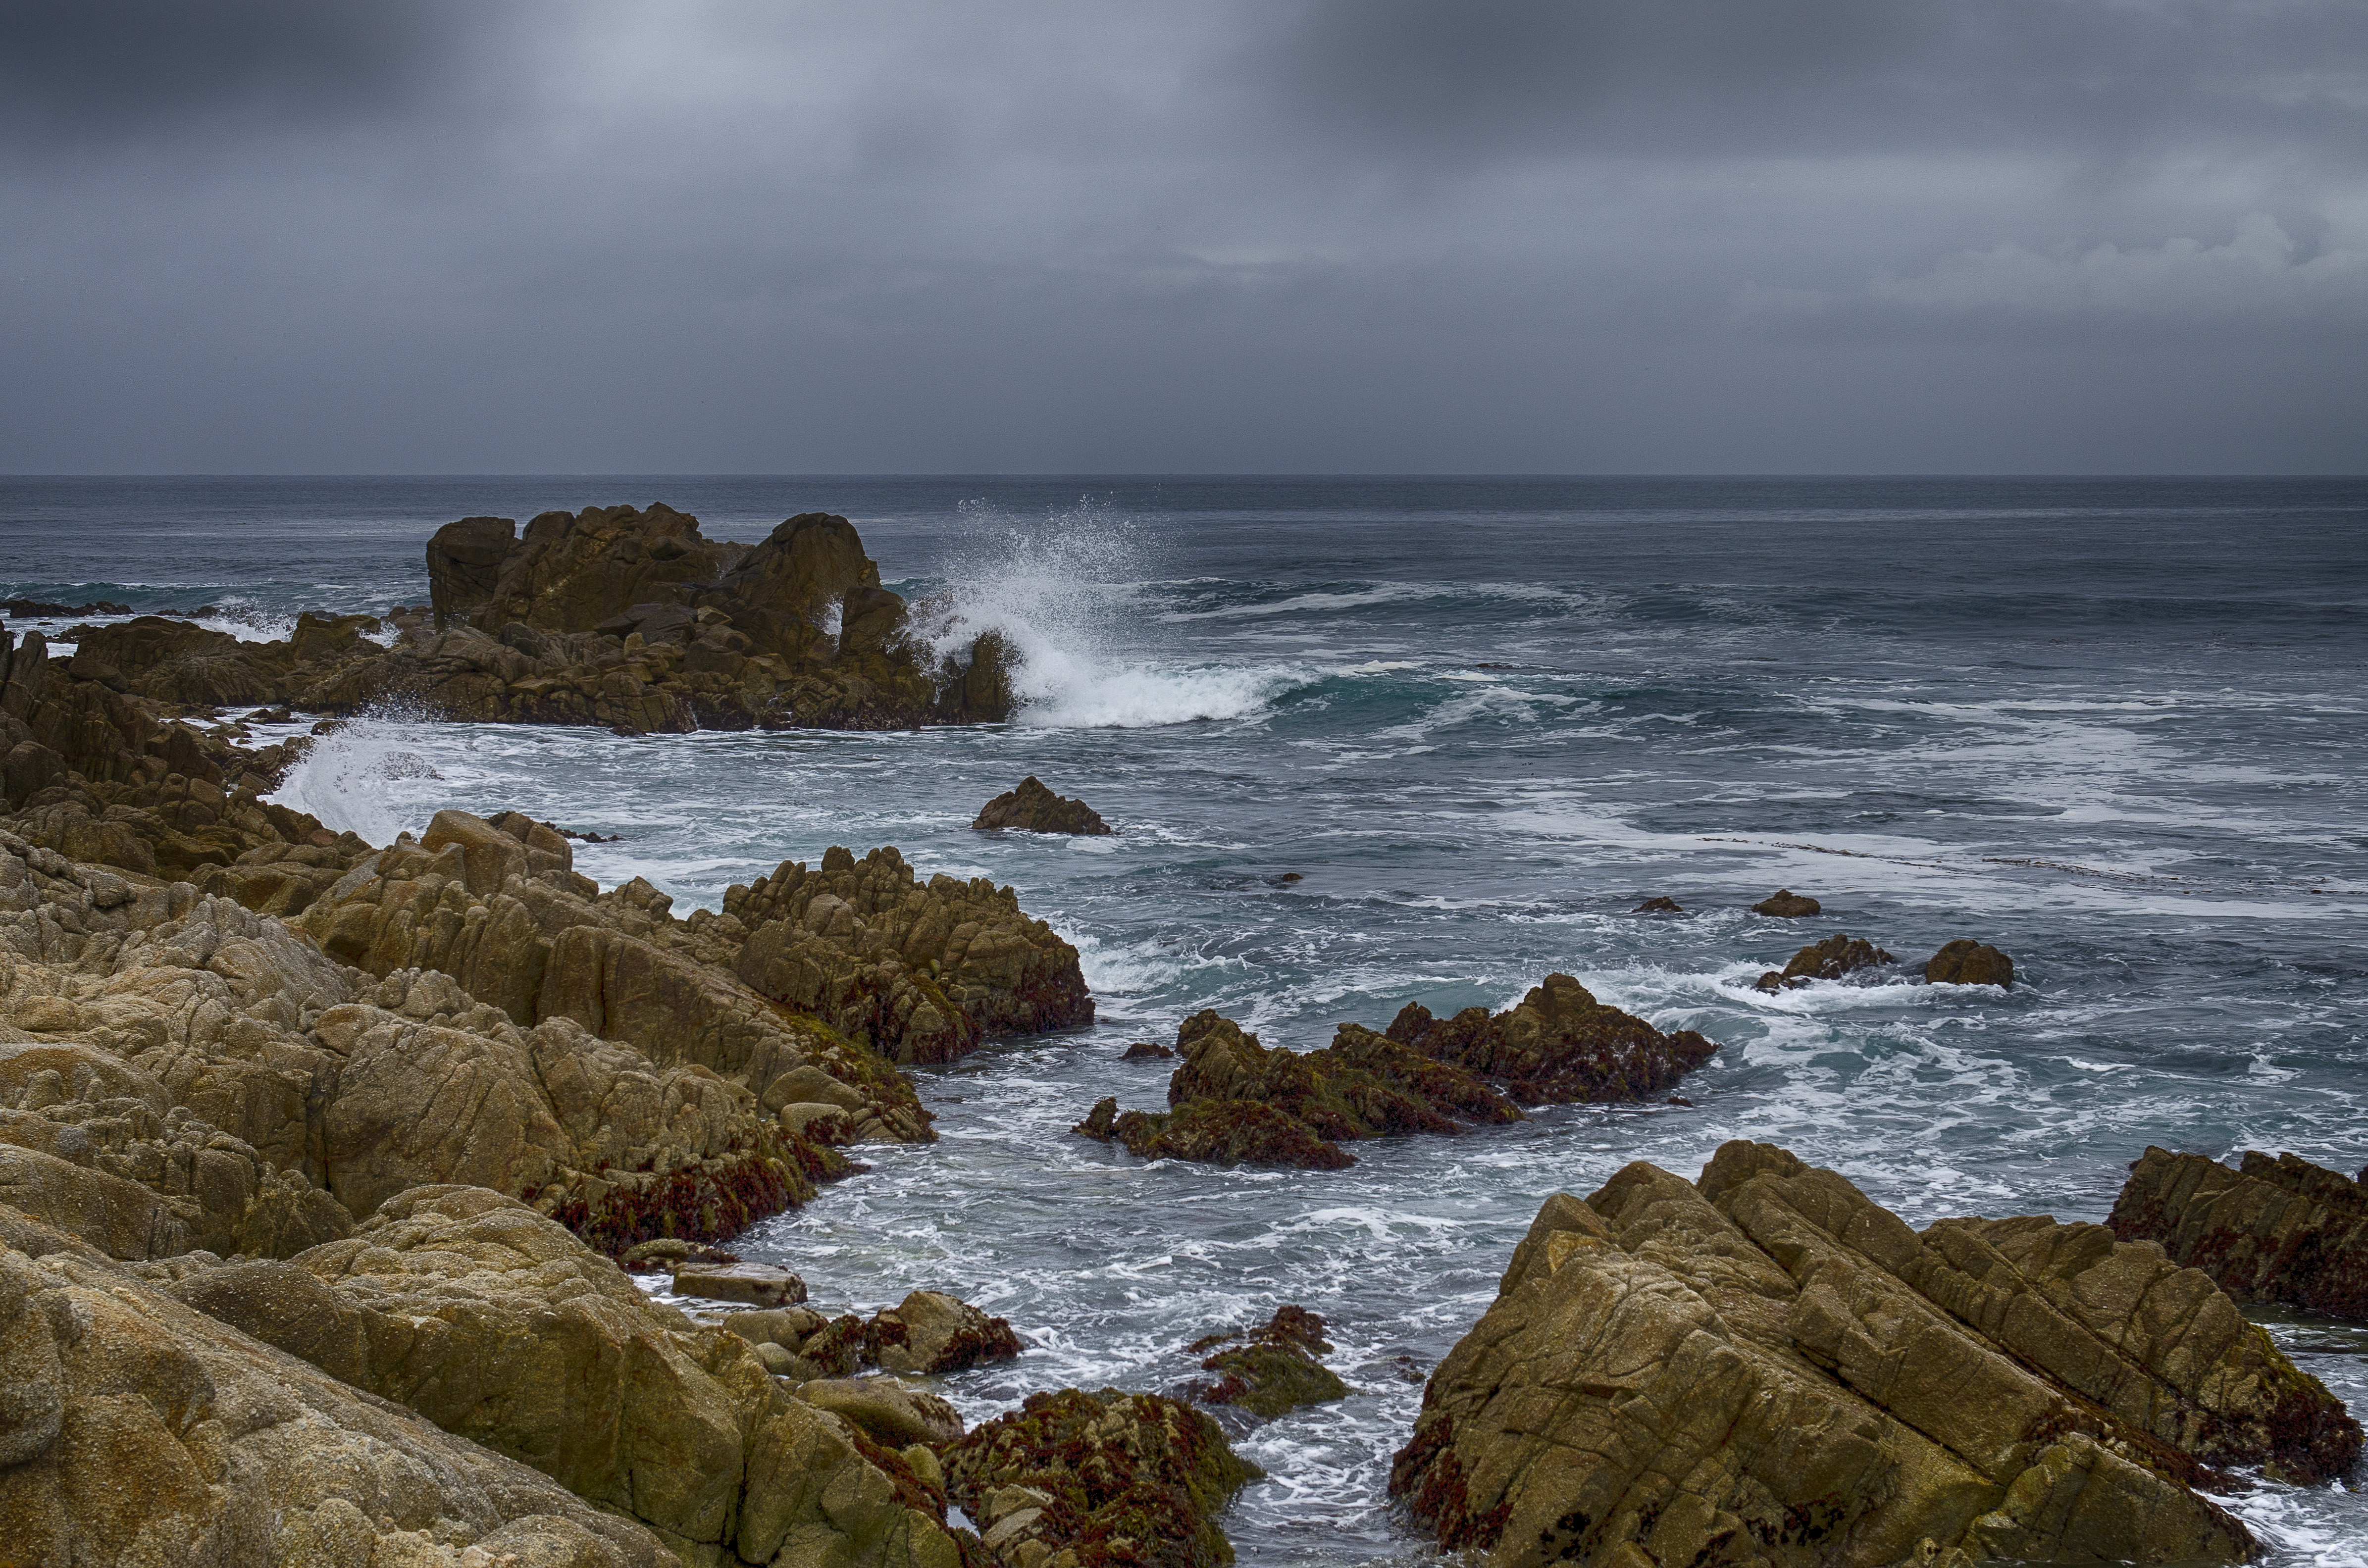 Western coast. Полуостров Монтерей. Каменный океан. Морское Западное побережье дожди. Монтерей Калифорния фото океана.